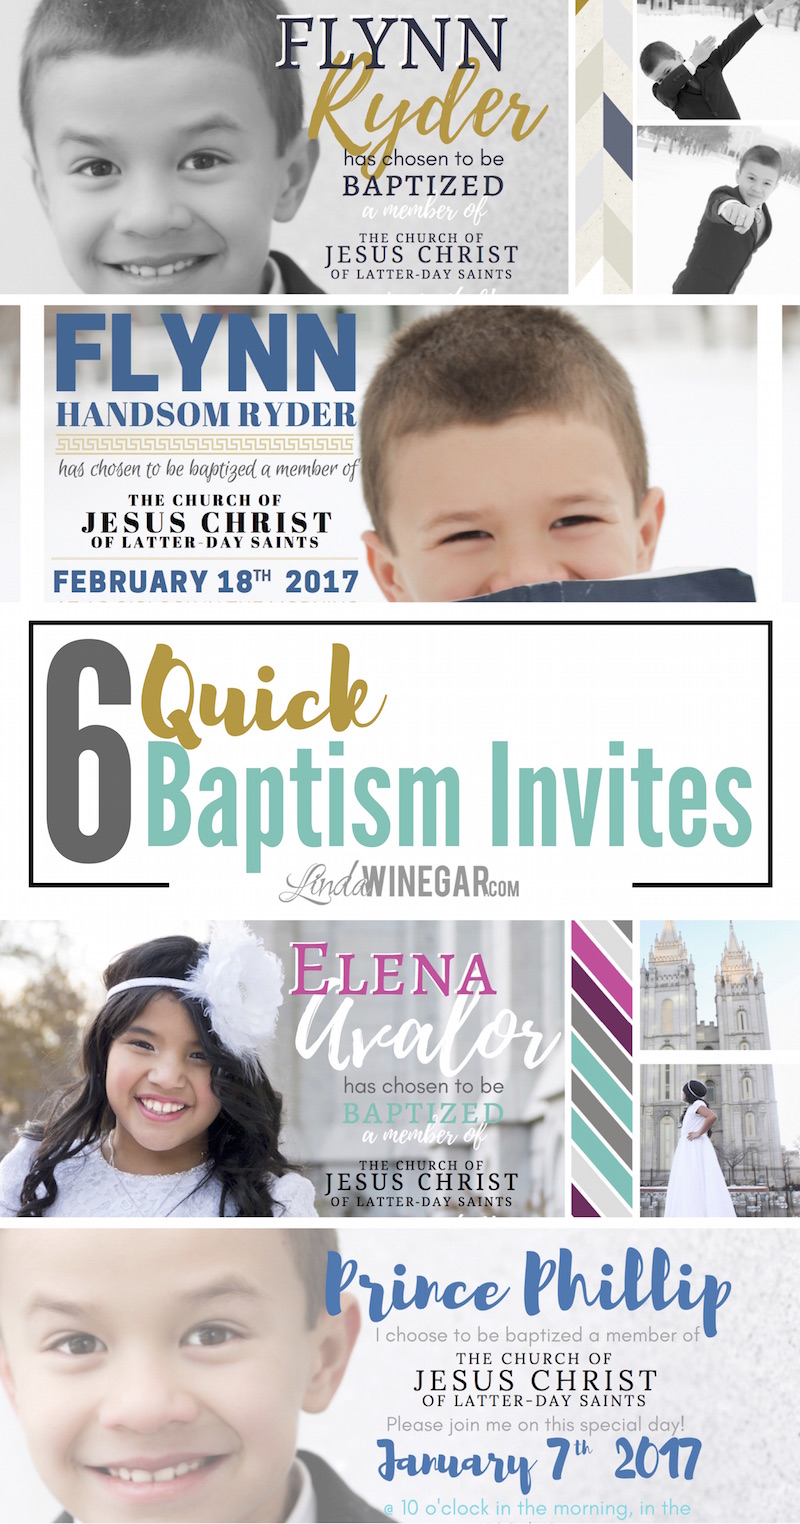 6-quick-lds-baptism-invites-linda-winegar